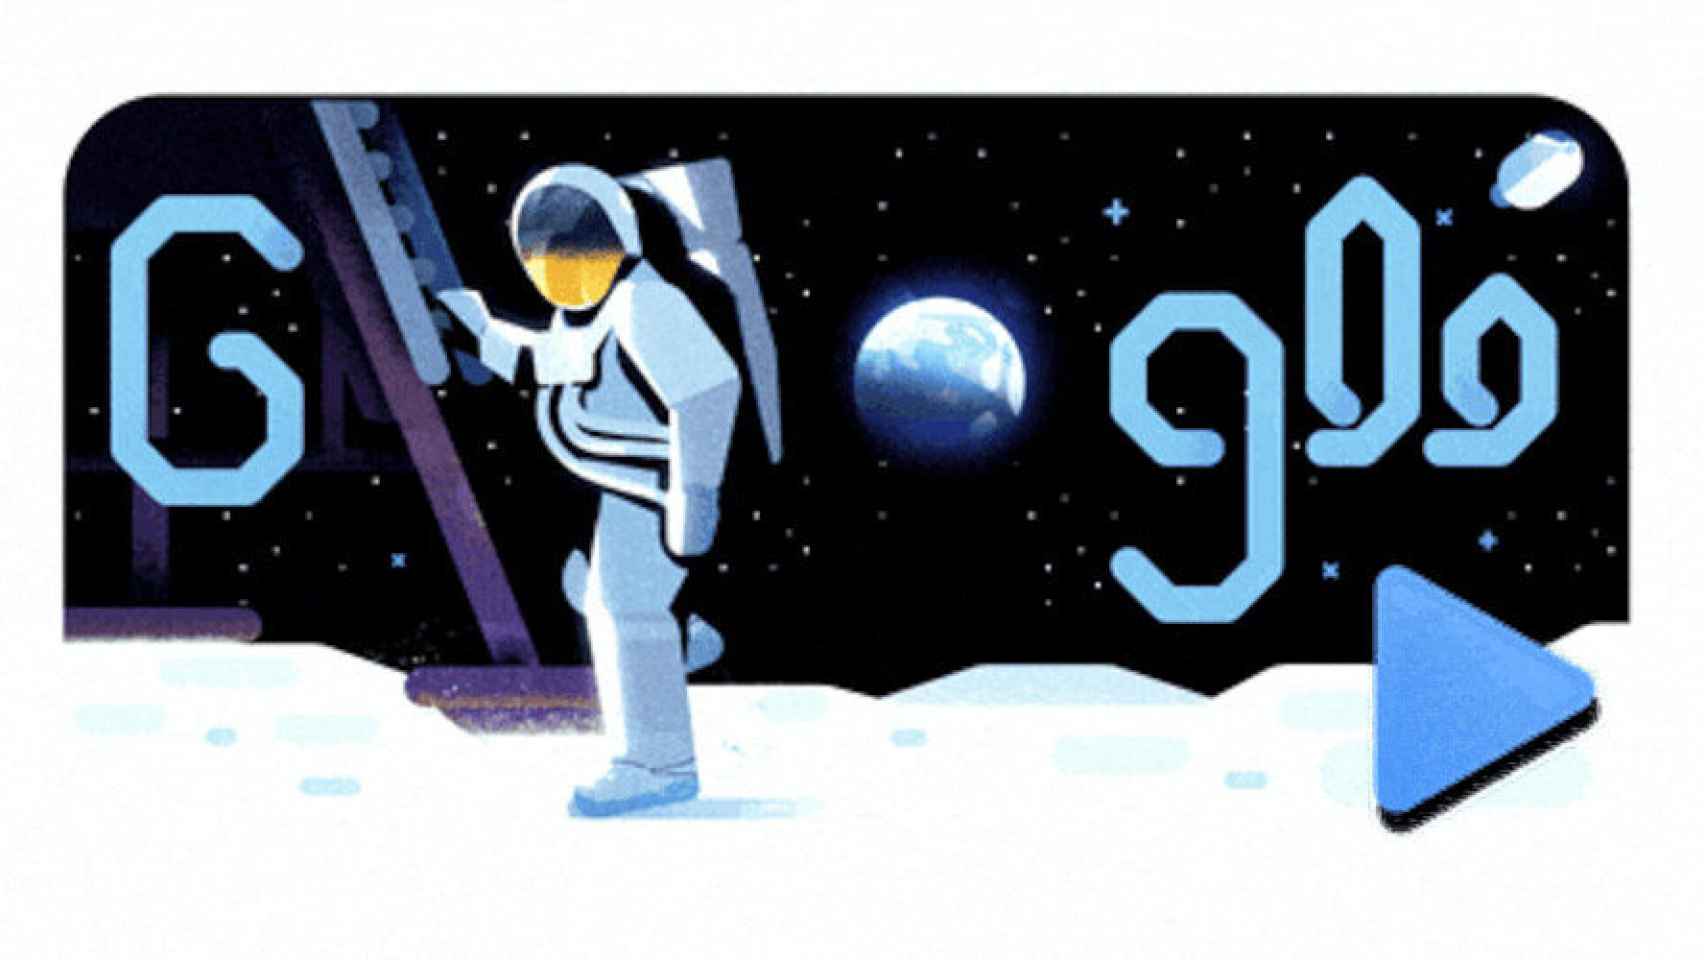 Google celebra 19 anos com Doodle que relembra 19 Doodle Games -  Acontecendo Aqui